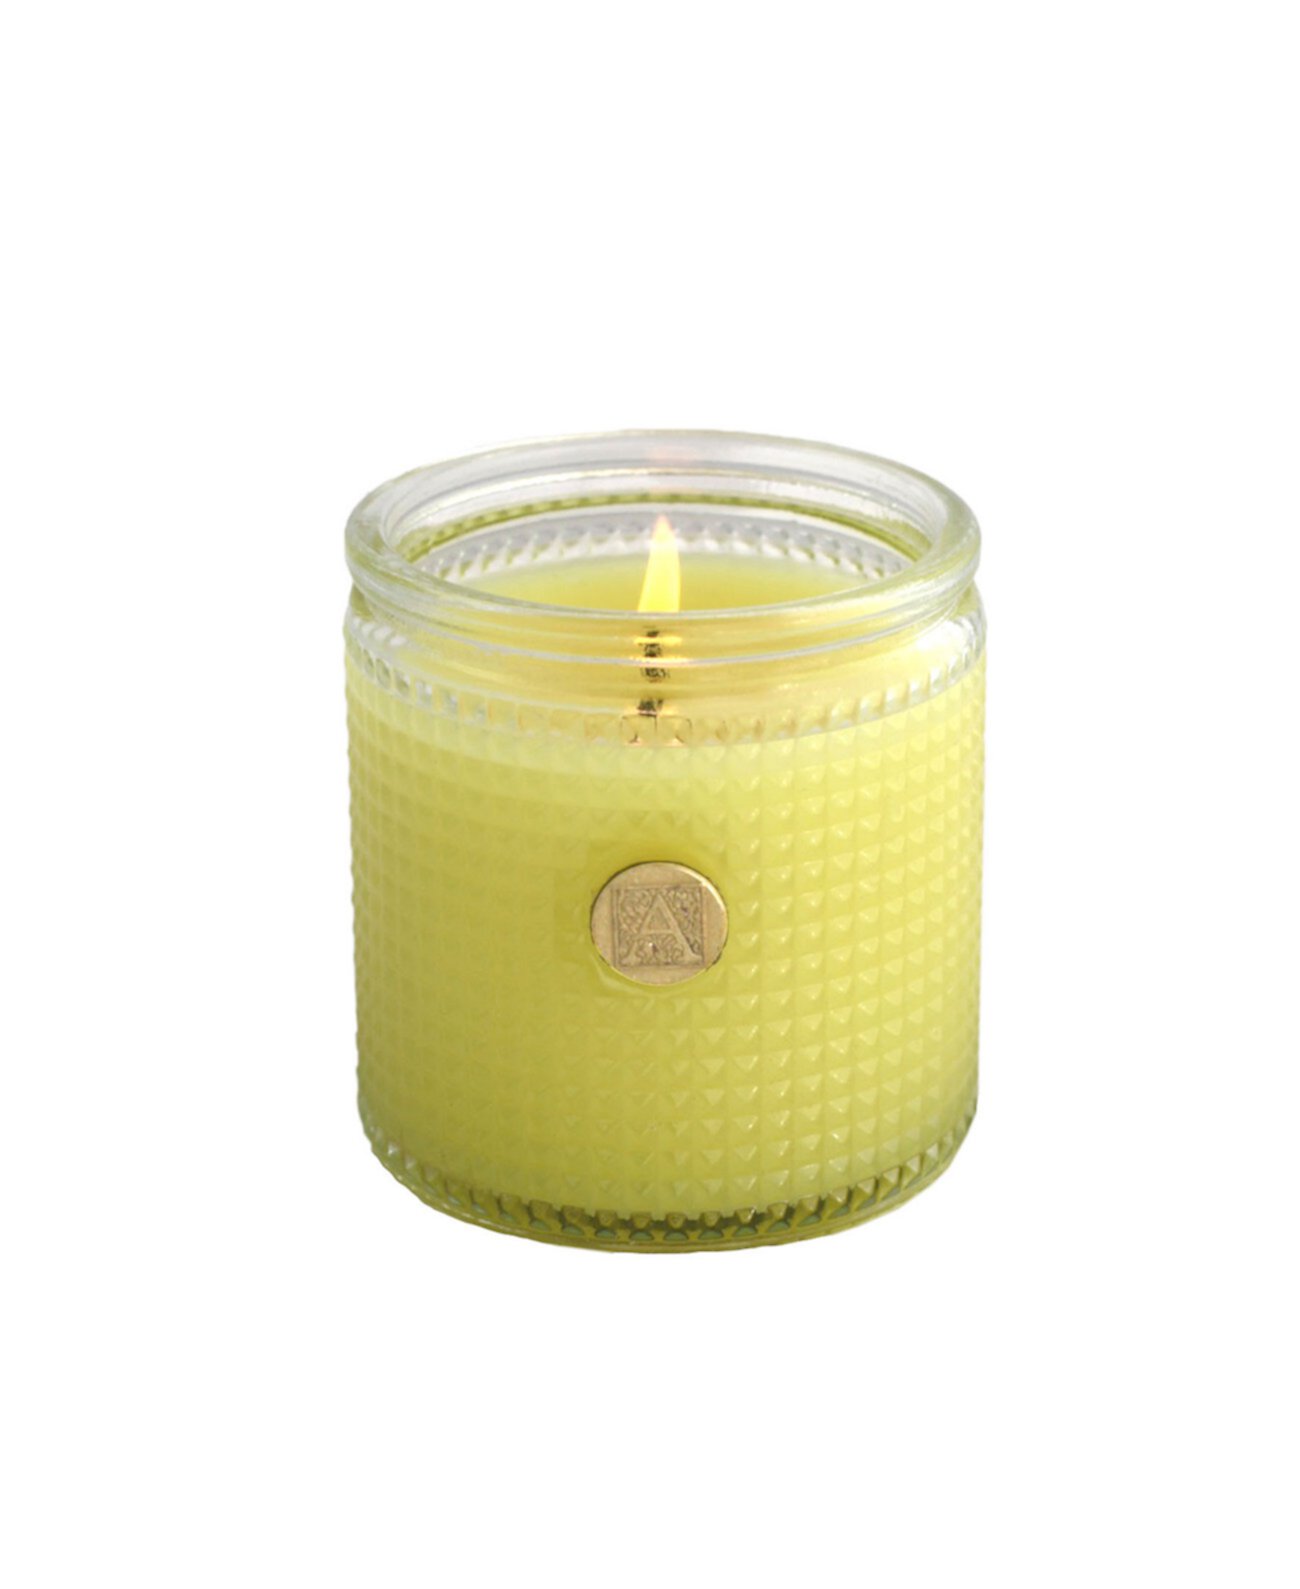 Текстурированная свеча Elegant Essentials с лимоном и базиликом, 6 унций Aromatique